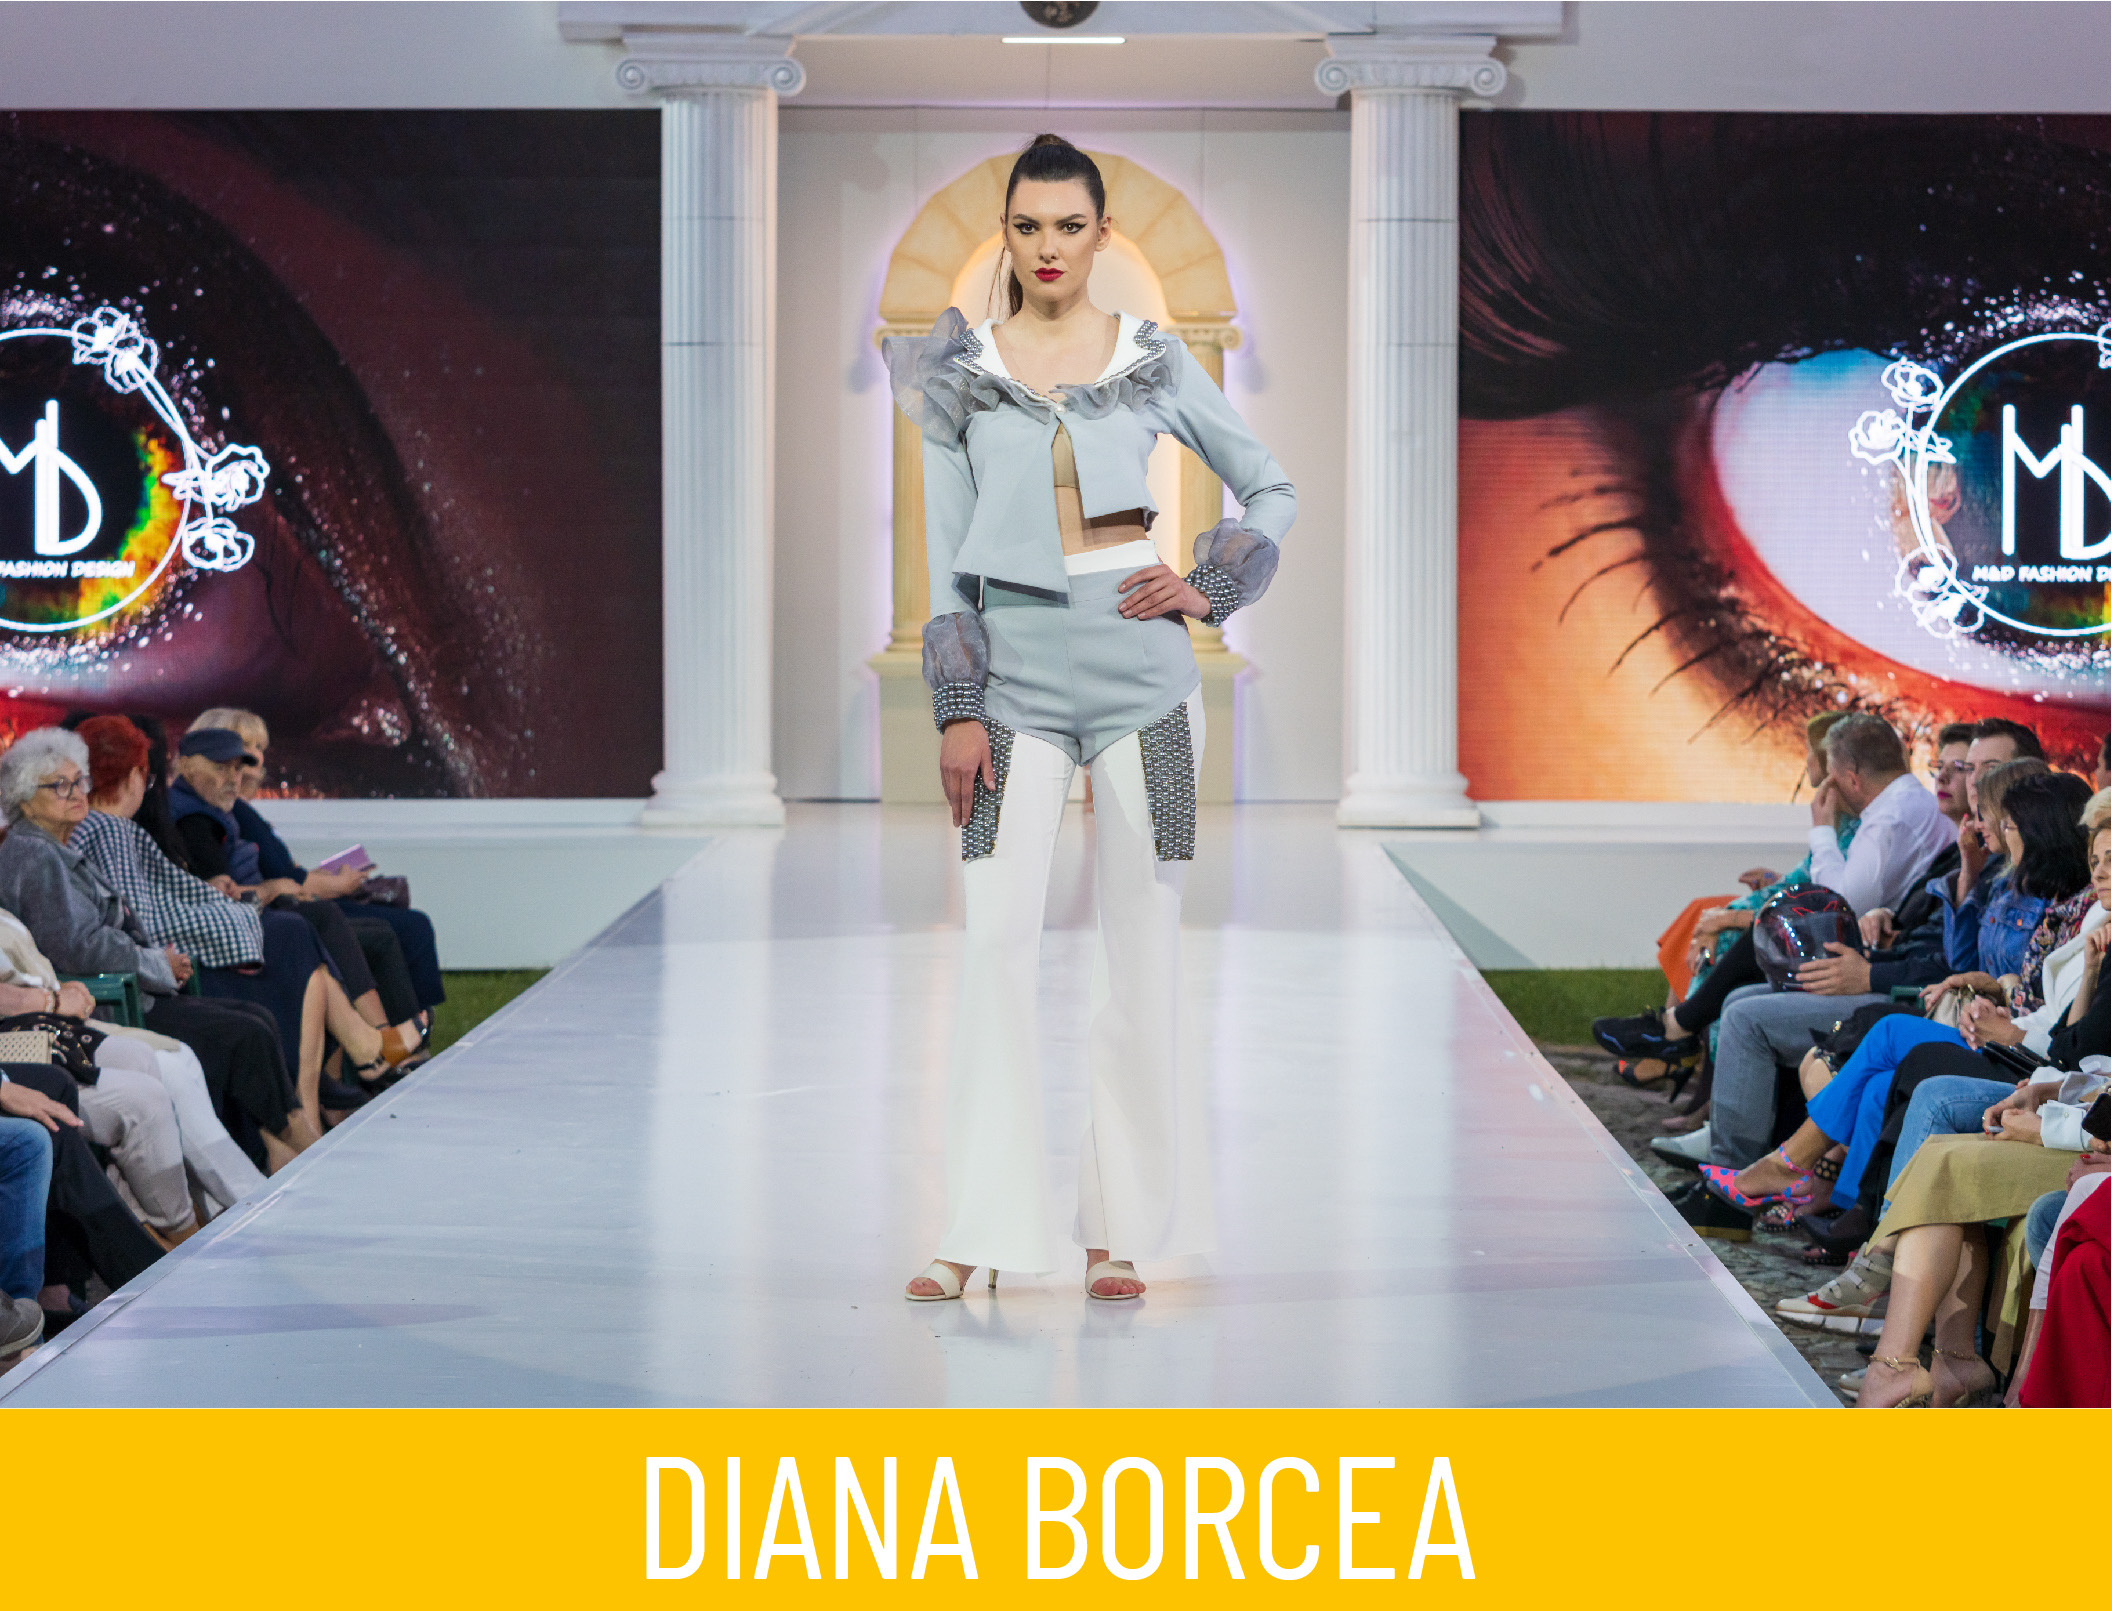 Diana Borcea